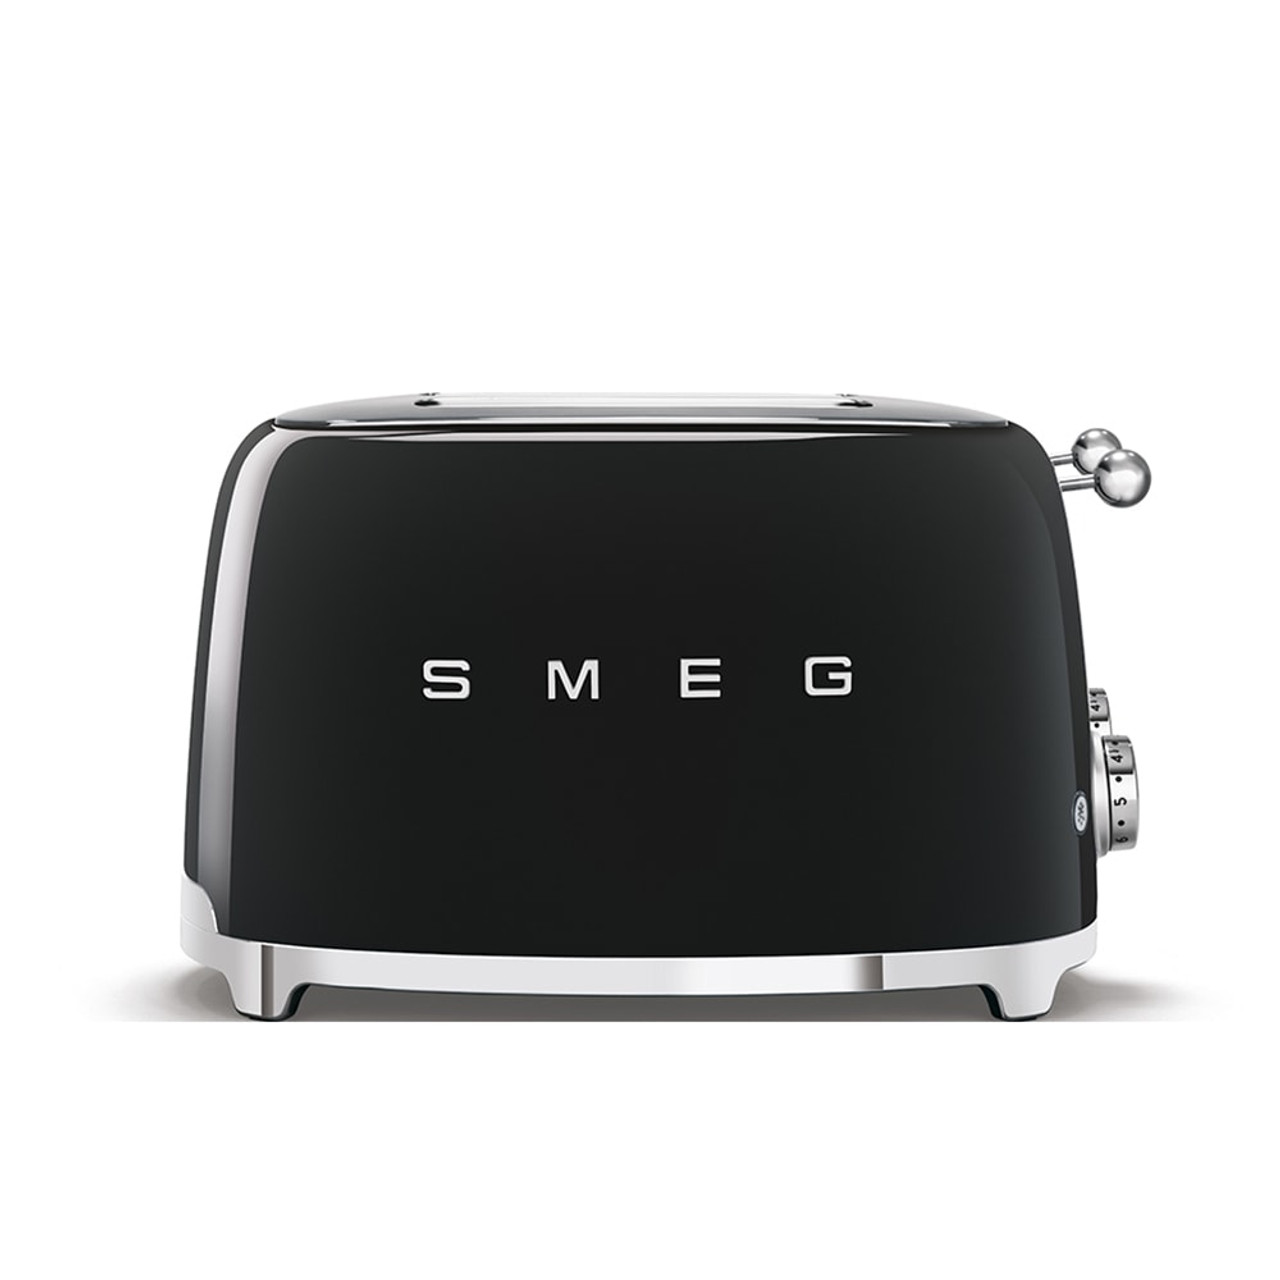 SMEG 4x4 Slice Toaster